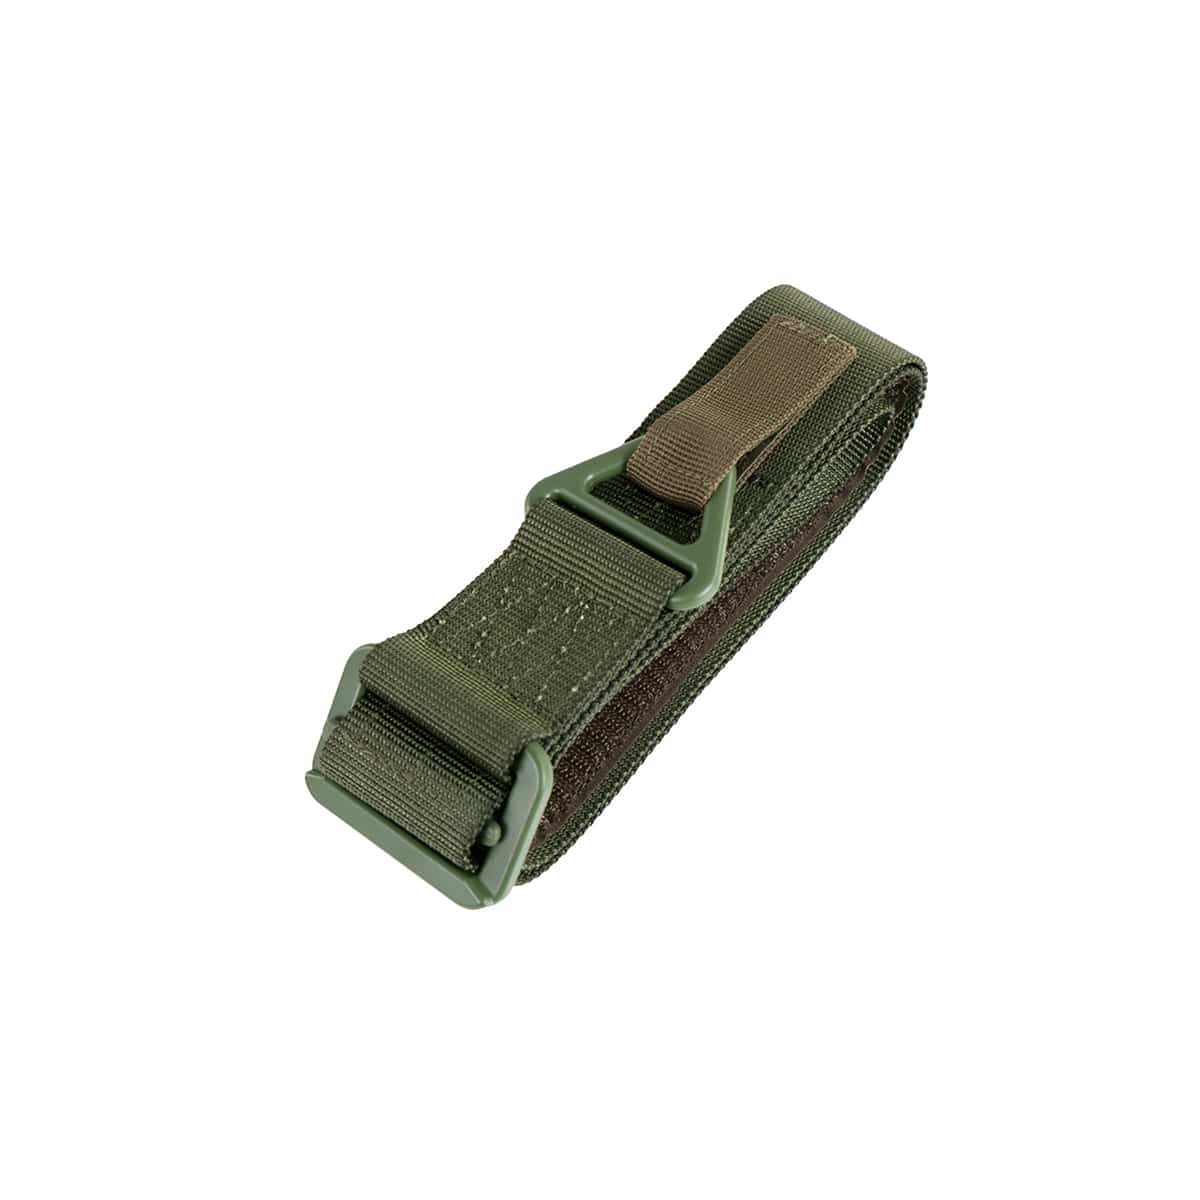 https://eu.novritsch.com/wp-content/uploads/2021/12/Product-Picture-Tactical-Belt-Gen2-Green.jpg